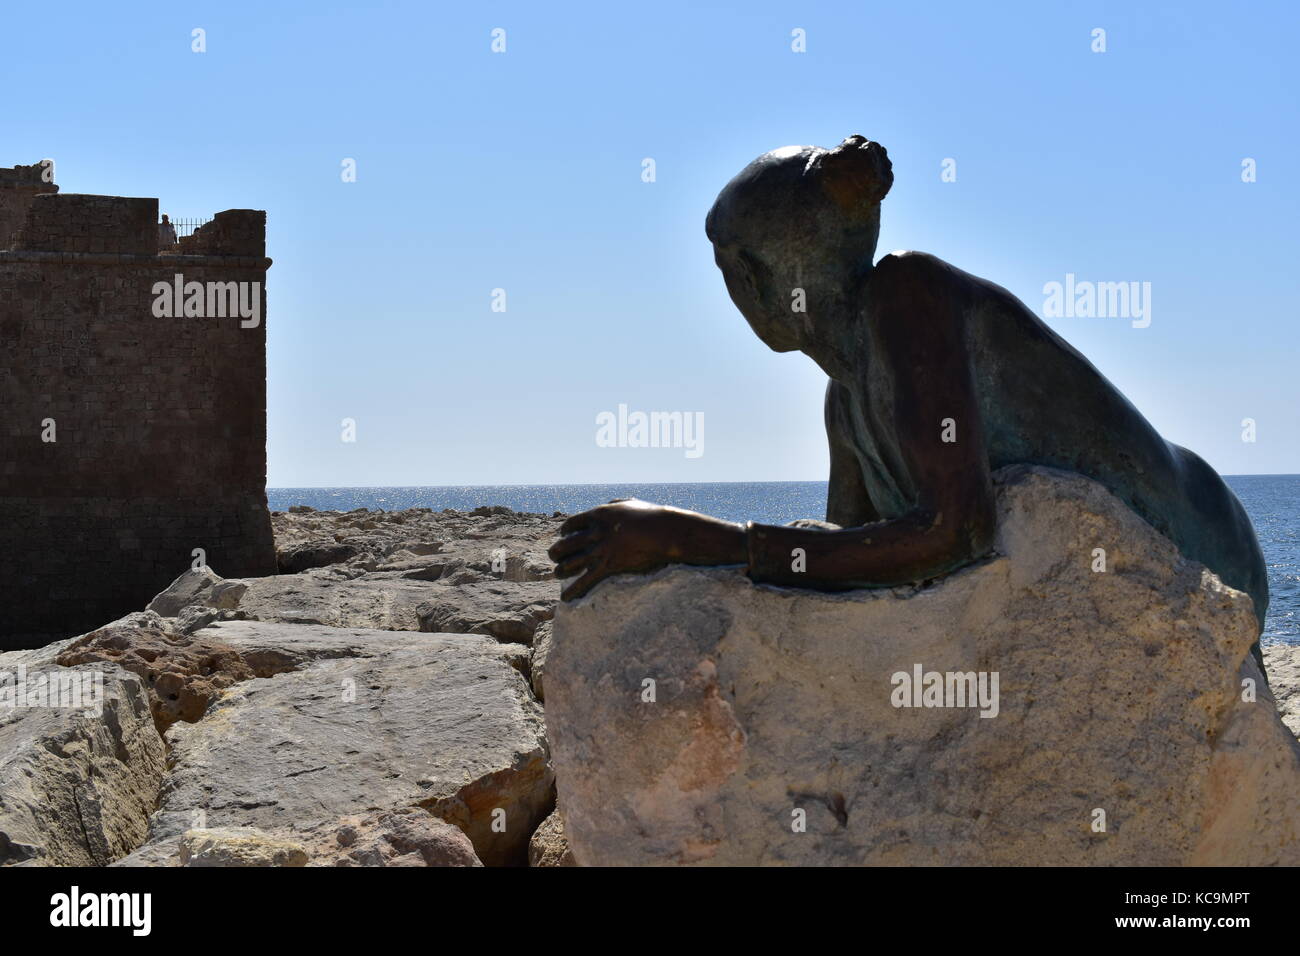 Sol alter scultura dell'artista cipriota giota ioannidou sul lungomare di Paphos, come parte di pafos2017 capitale europea della cultura framework. Foto Stock